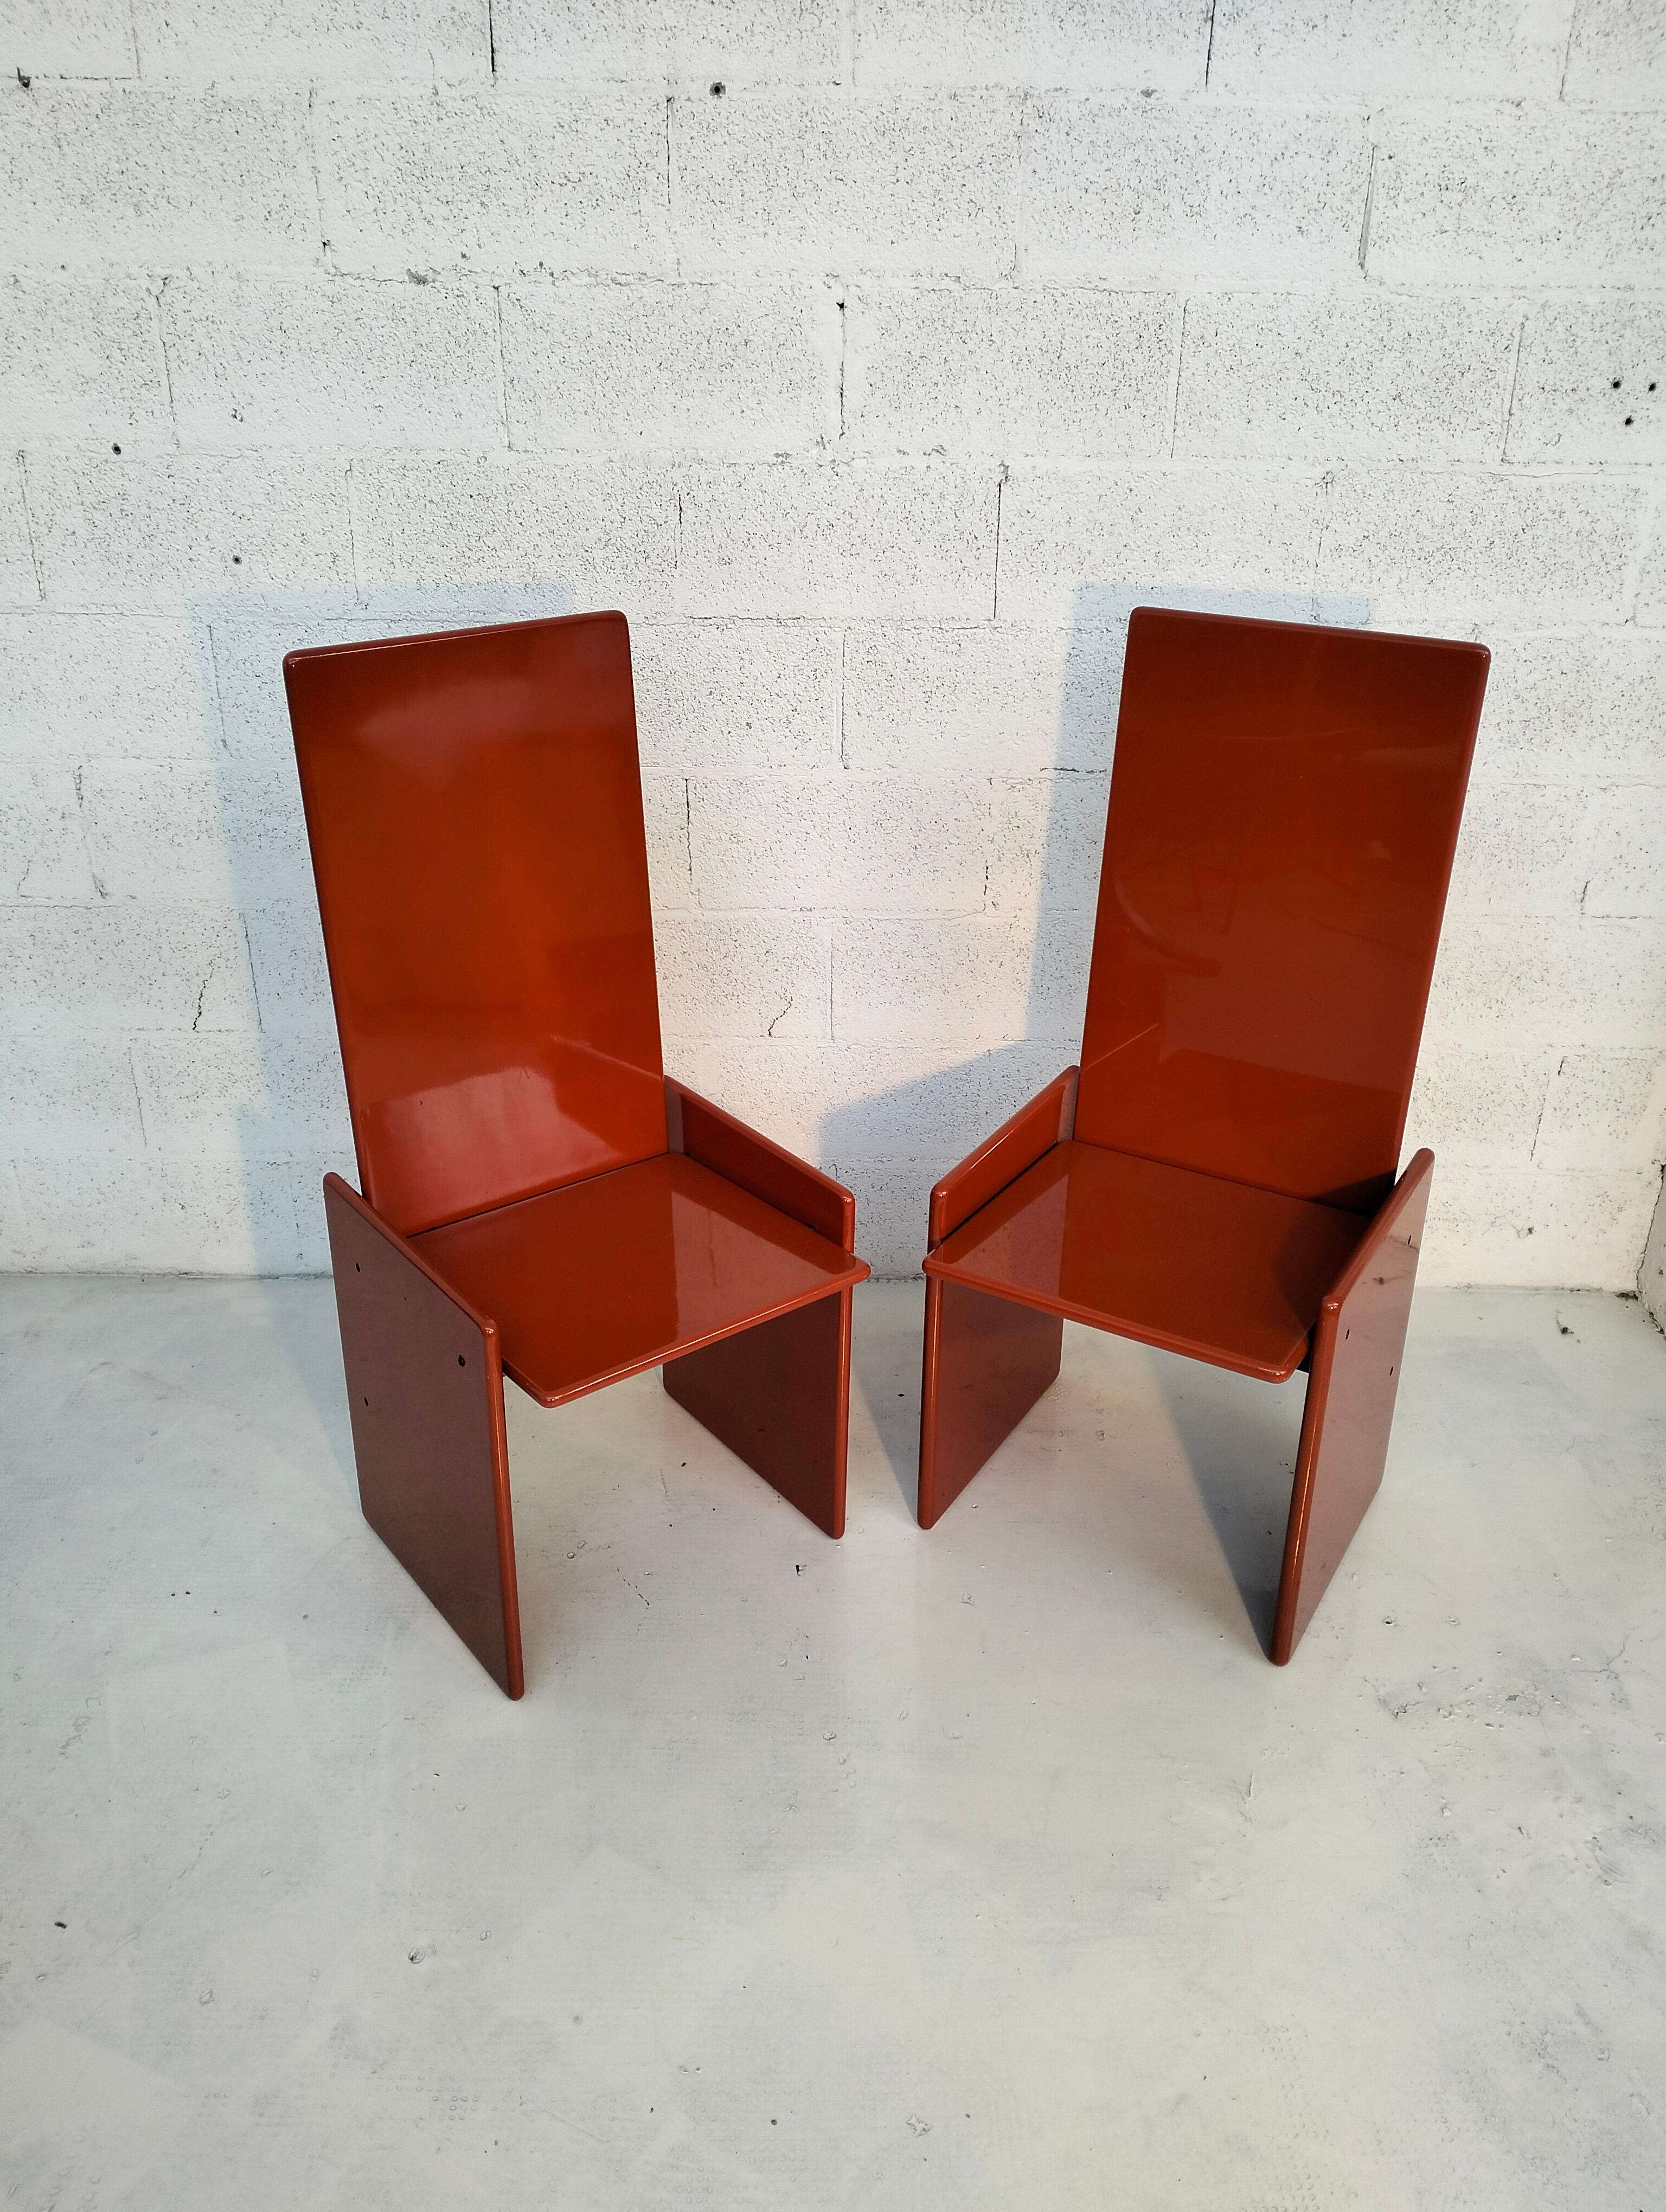 Late 20th Century Pair of 2 orange Kazuki chairs by Kazuhide Takahama for Simon 60s, 70s